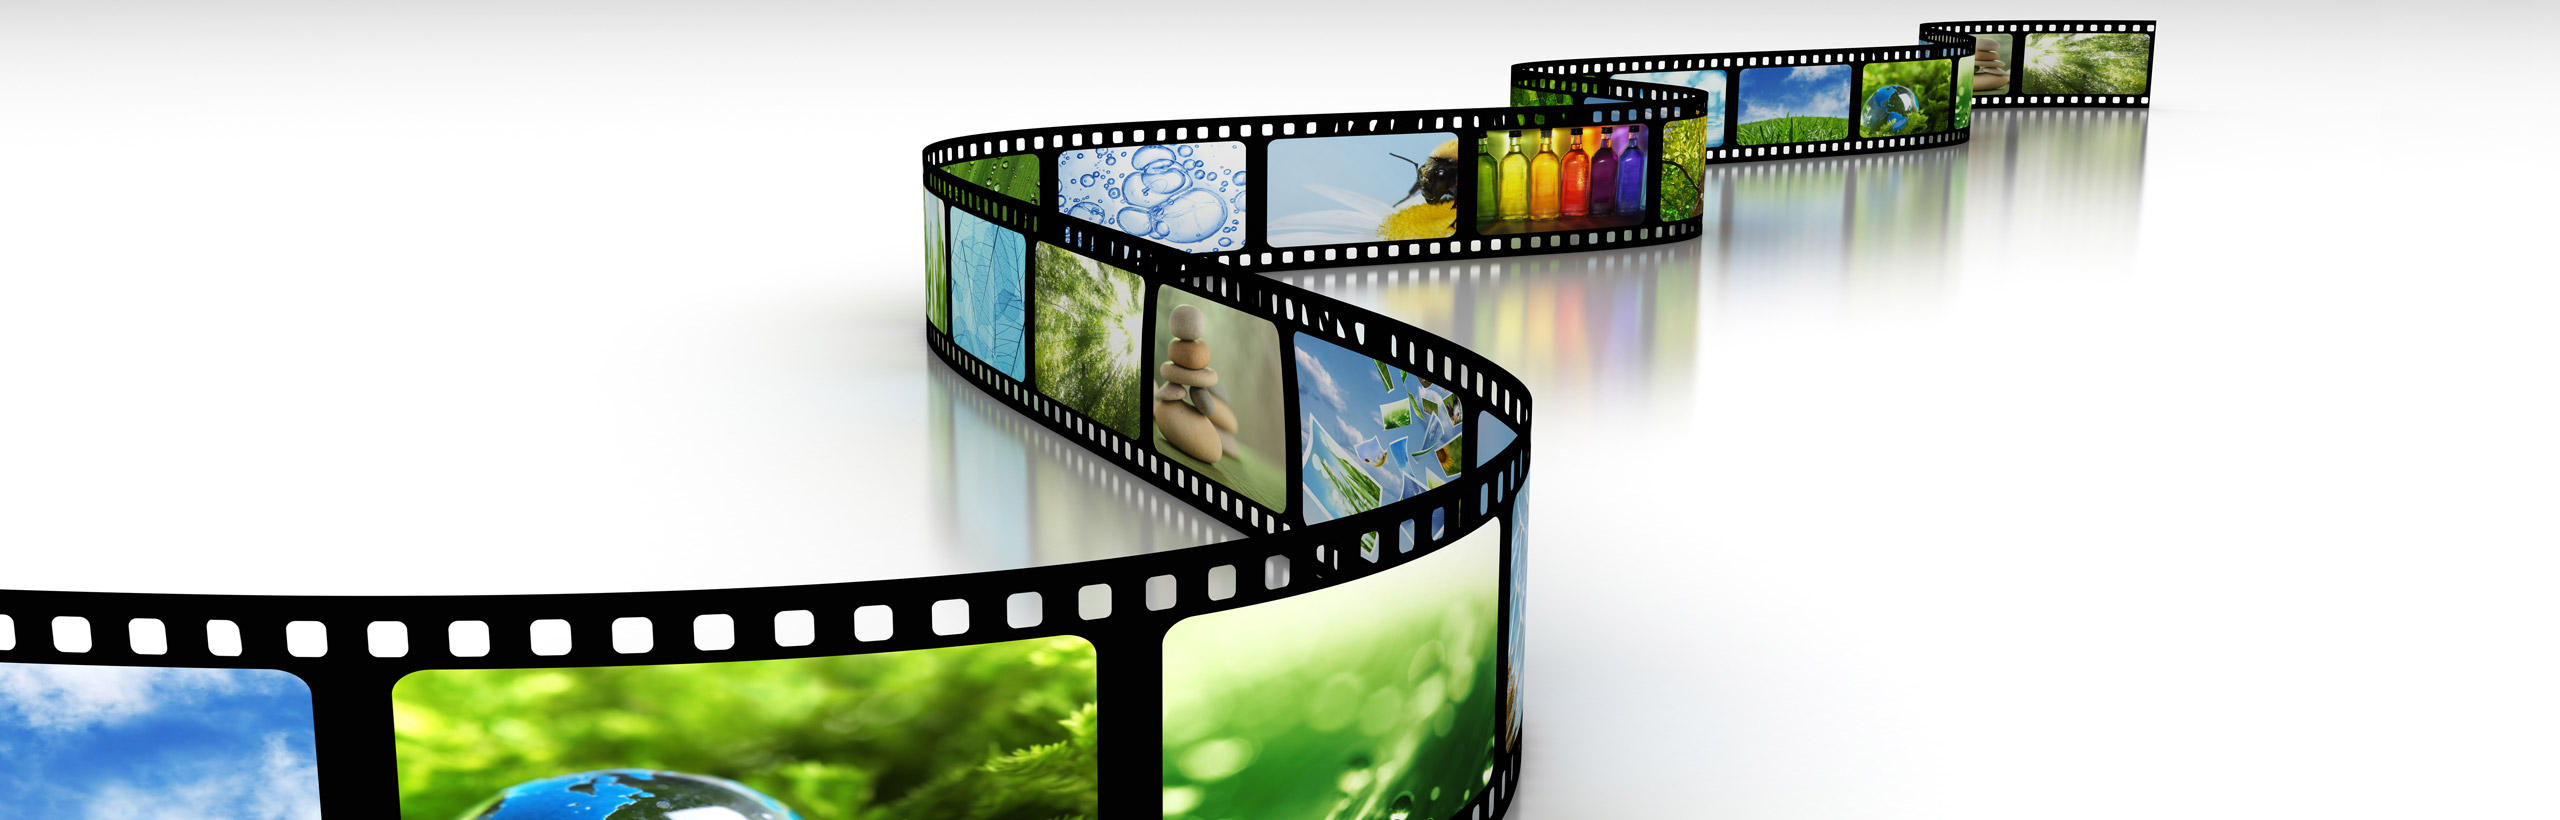 Création et distribution de contenus informatifs et de divertissement audiovisuel.